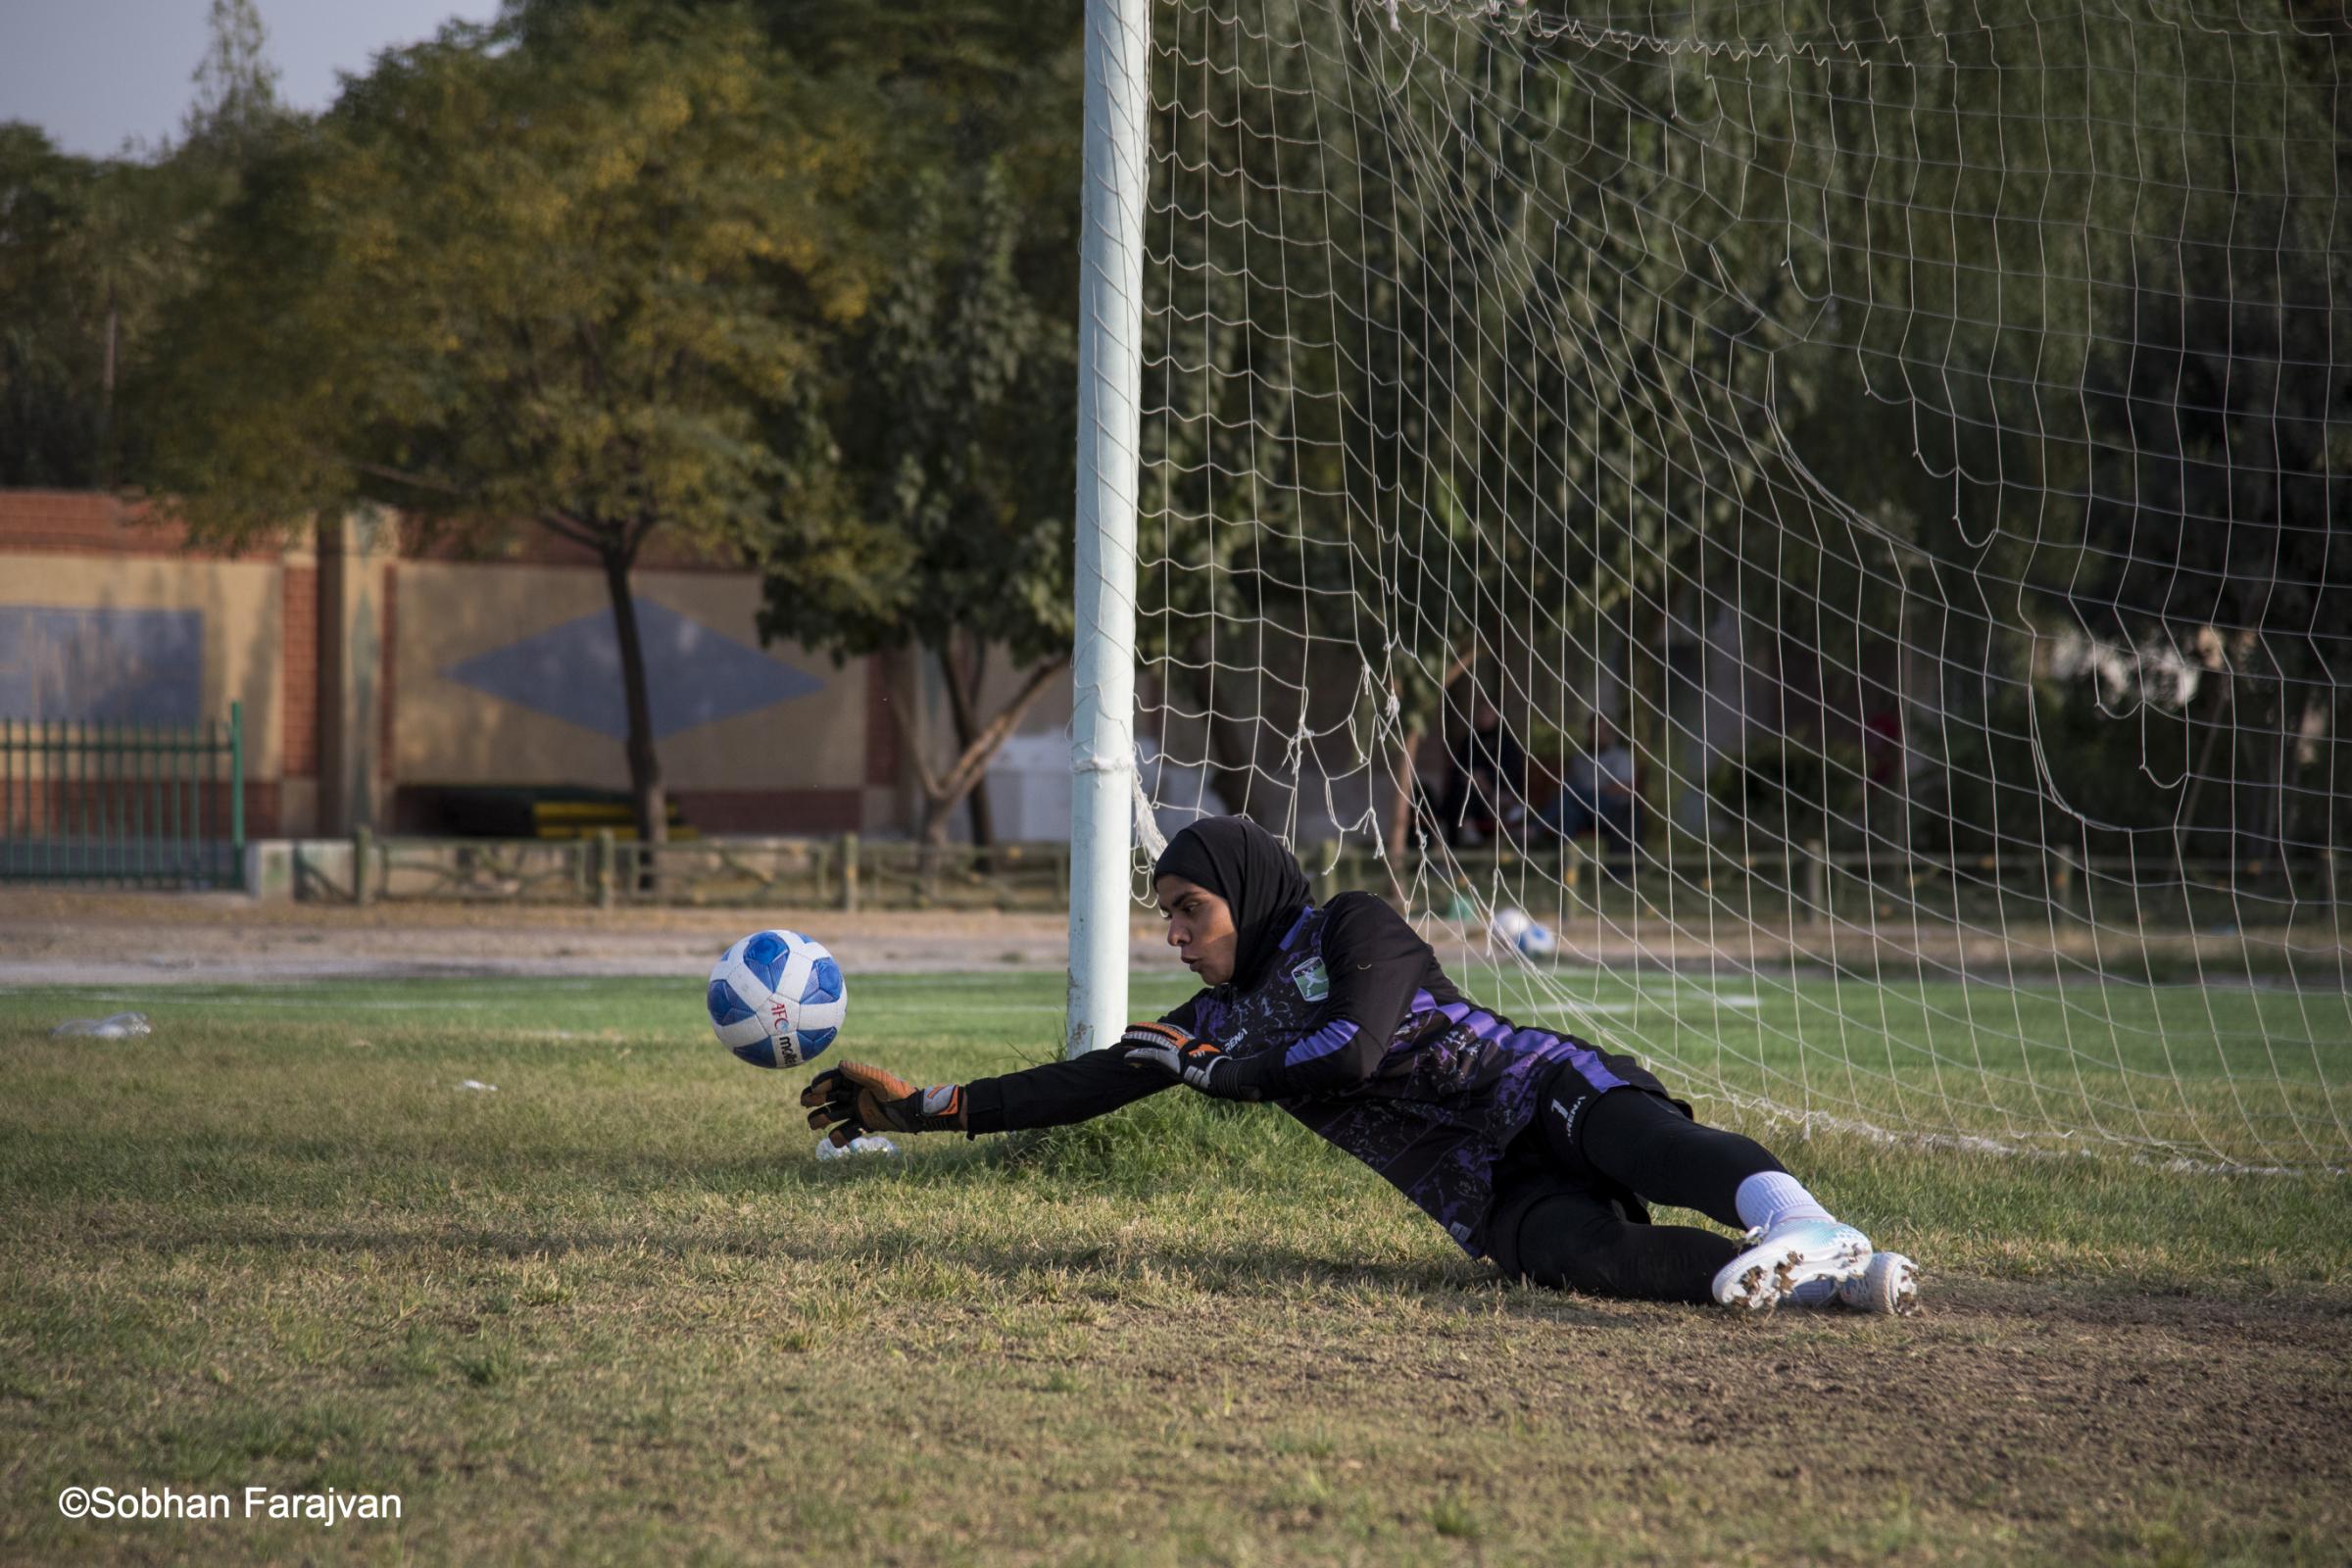 Iranian women's soccer academy (2022) - An Iranian girl goalkeeper reaching to block an attempted...